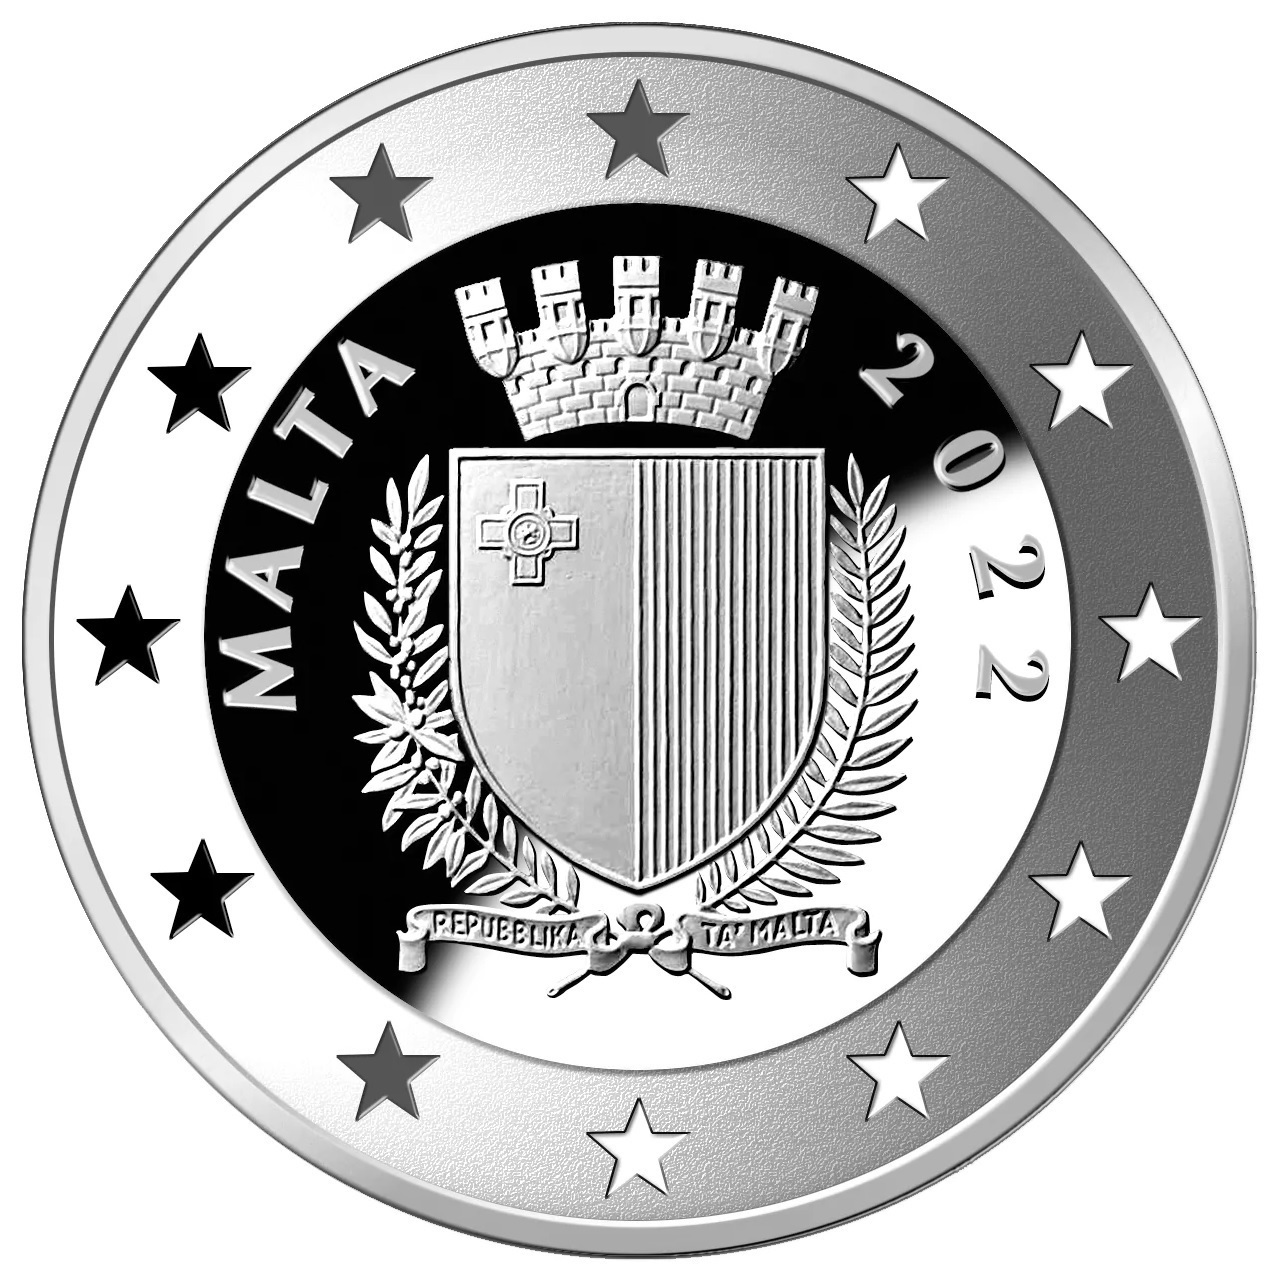 (EUR13.Proof.2022.10.E.5) 10 euro Malta 2022 Proof silver - Agostino Levanzin Obverse (zoom)